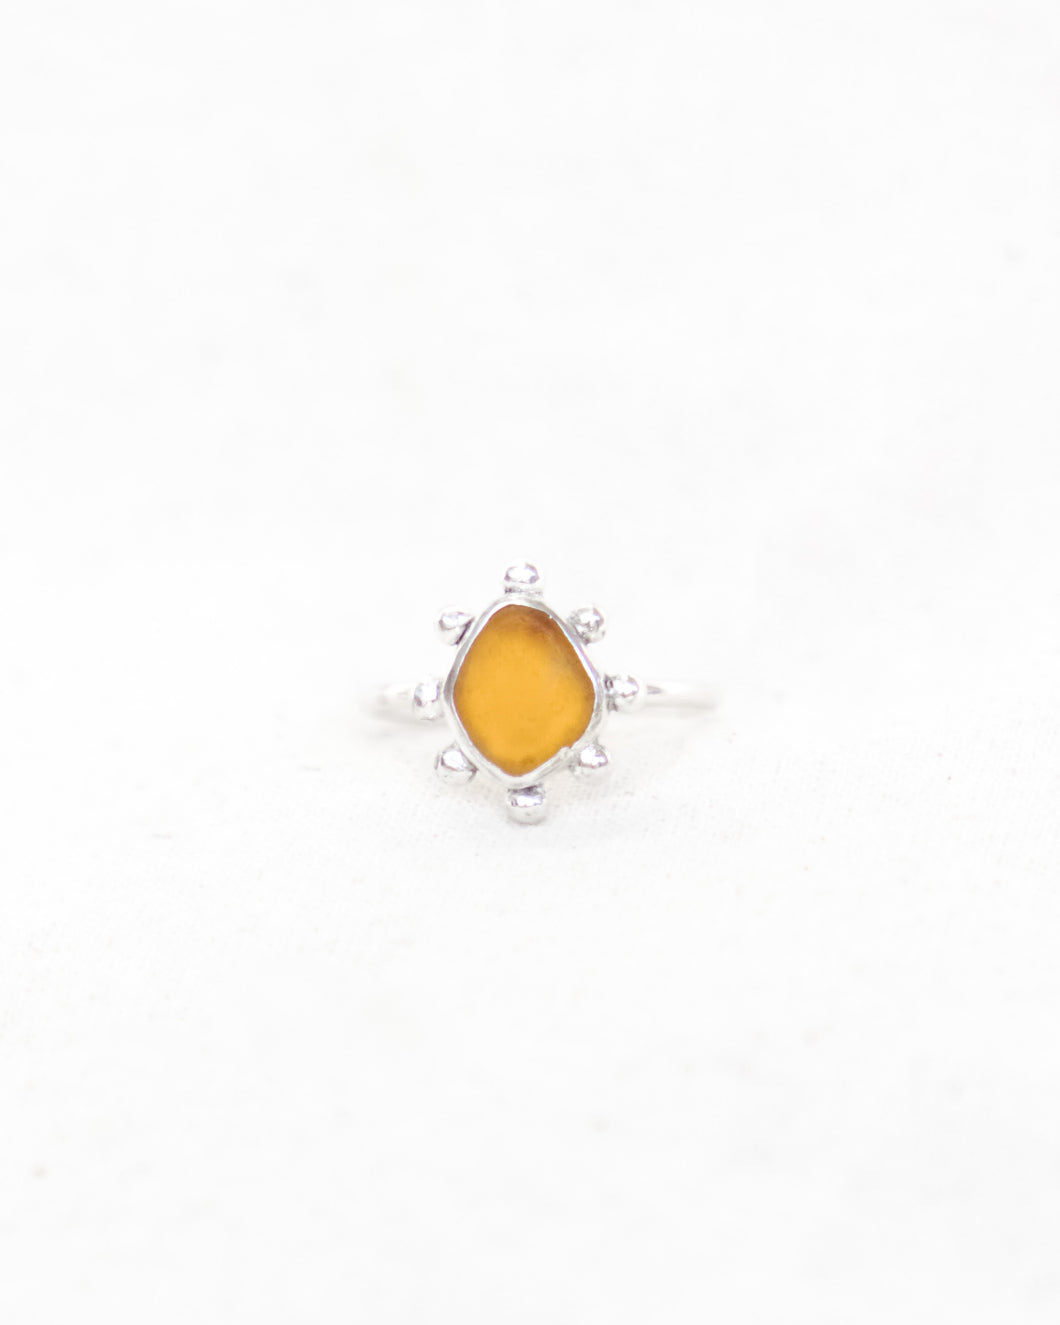 Yellow/Orange Sea Glass - Size N